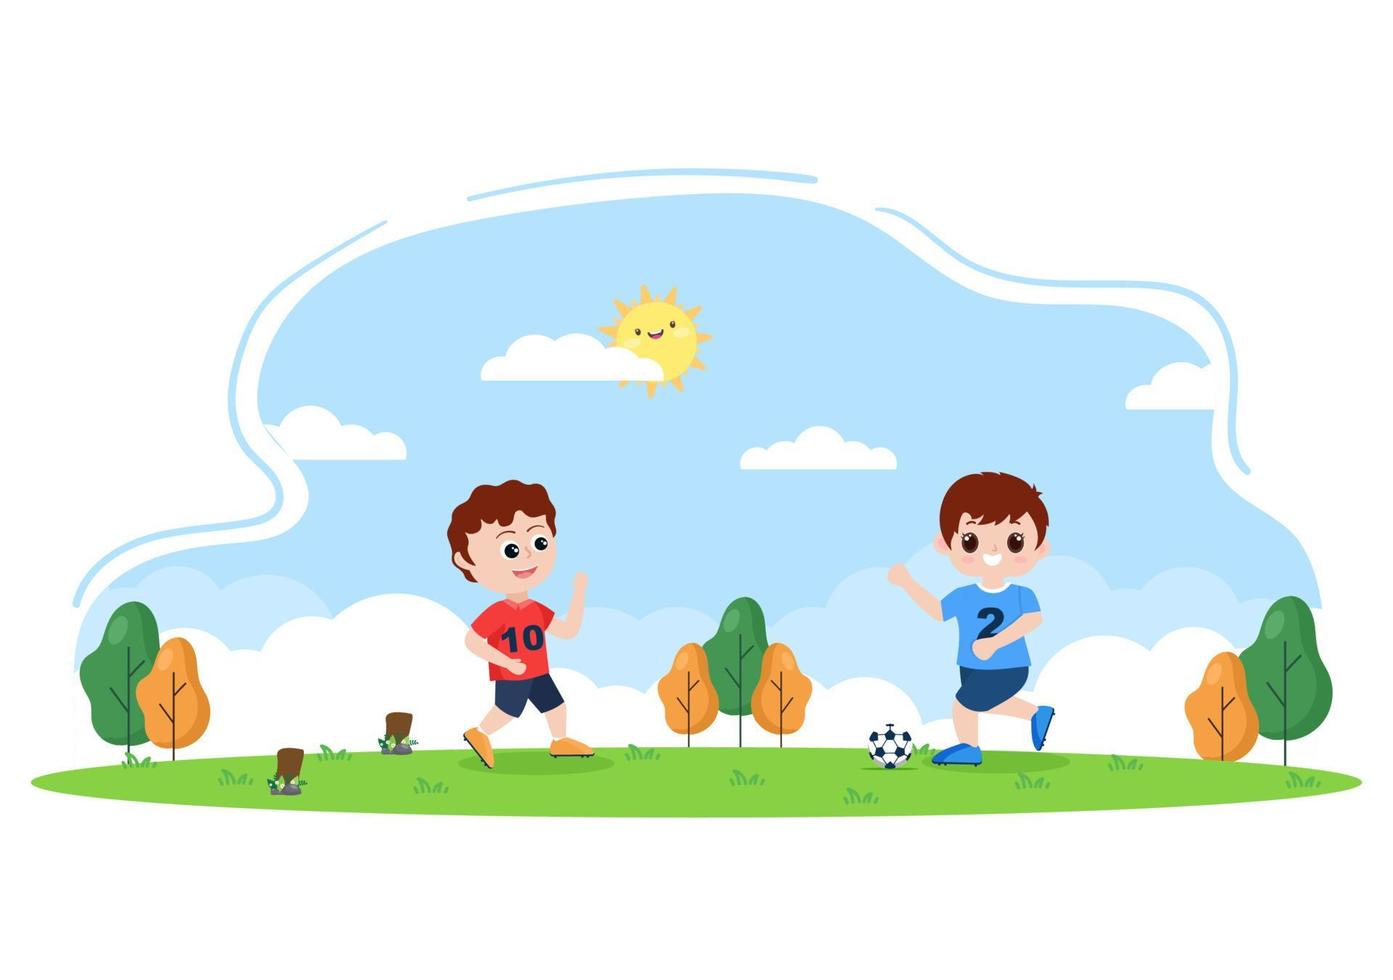 spela fotboll med pojkar spela fotboll bära sportuniform olika rörelser som sparkar, håller, försvarar, parerar och attackerar på fältet. vektor illustration